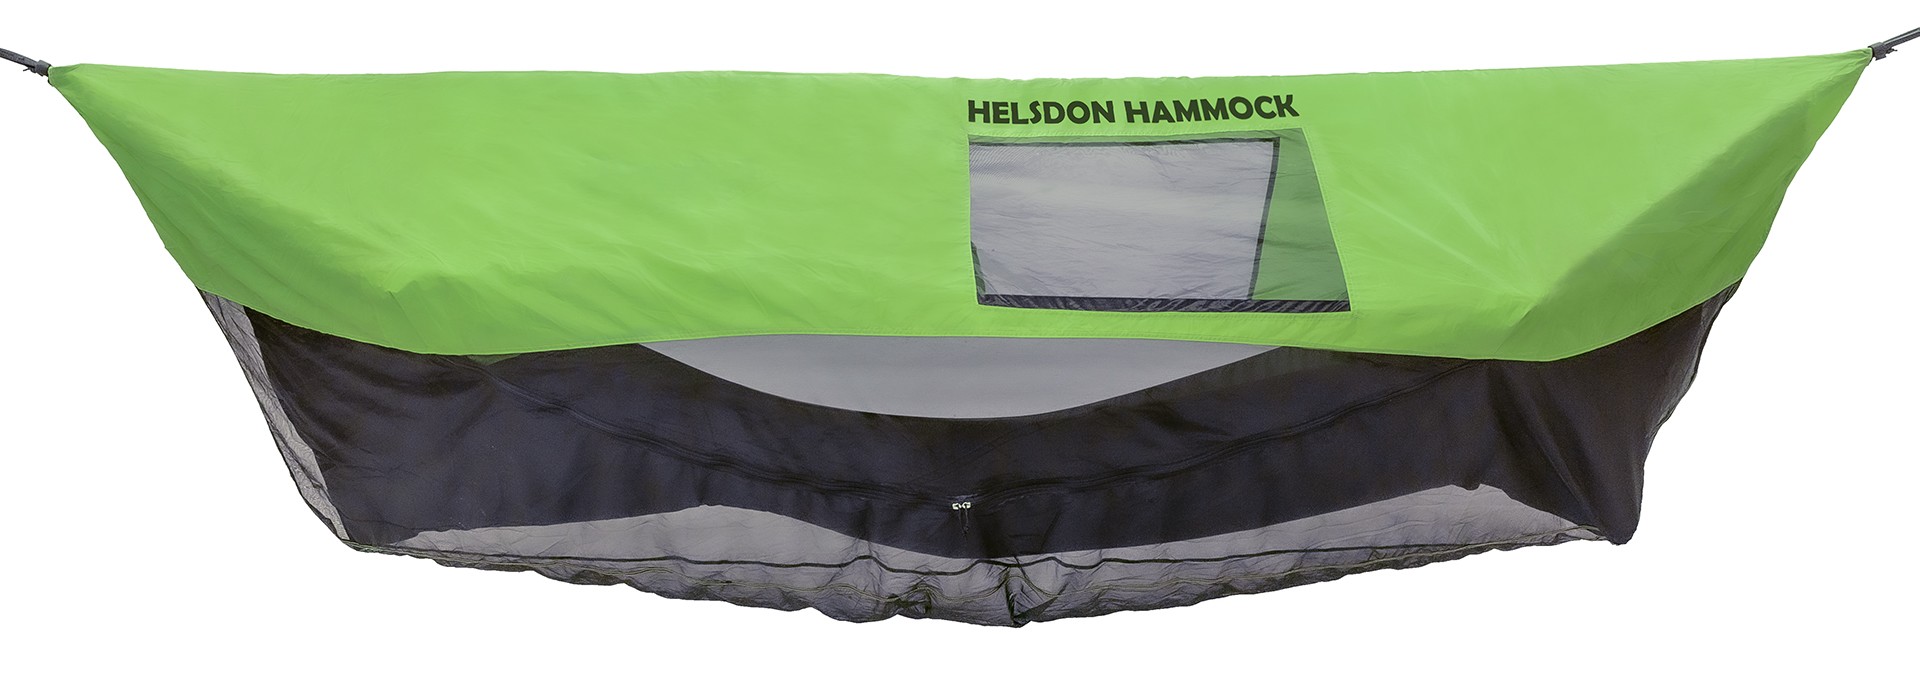 The Helsdon Hammock